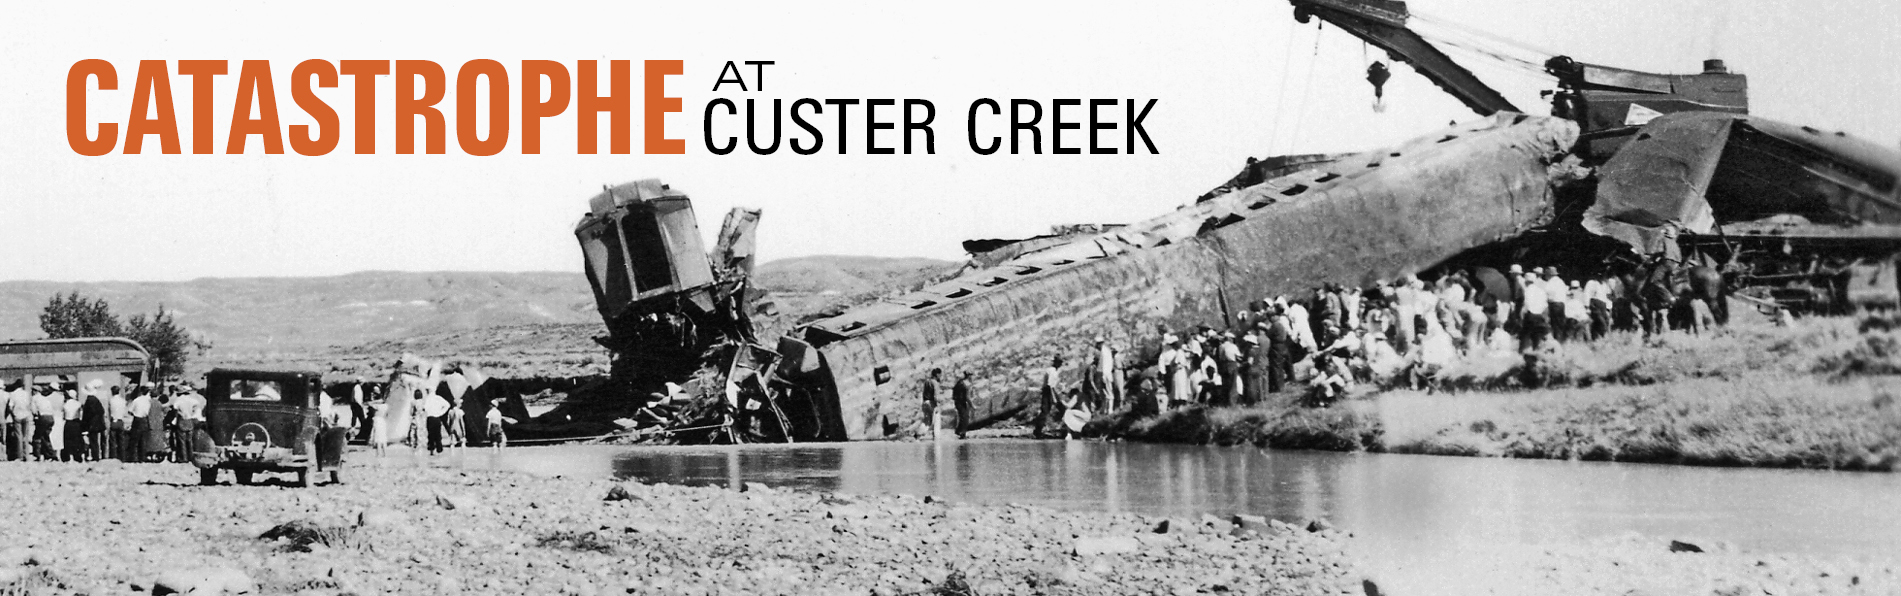 Catastrophe at Custer Creek